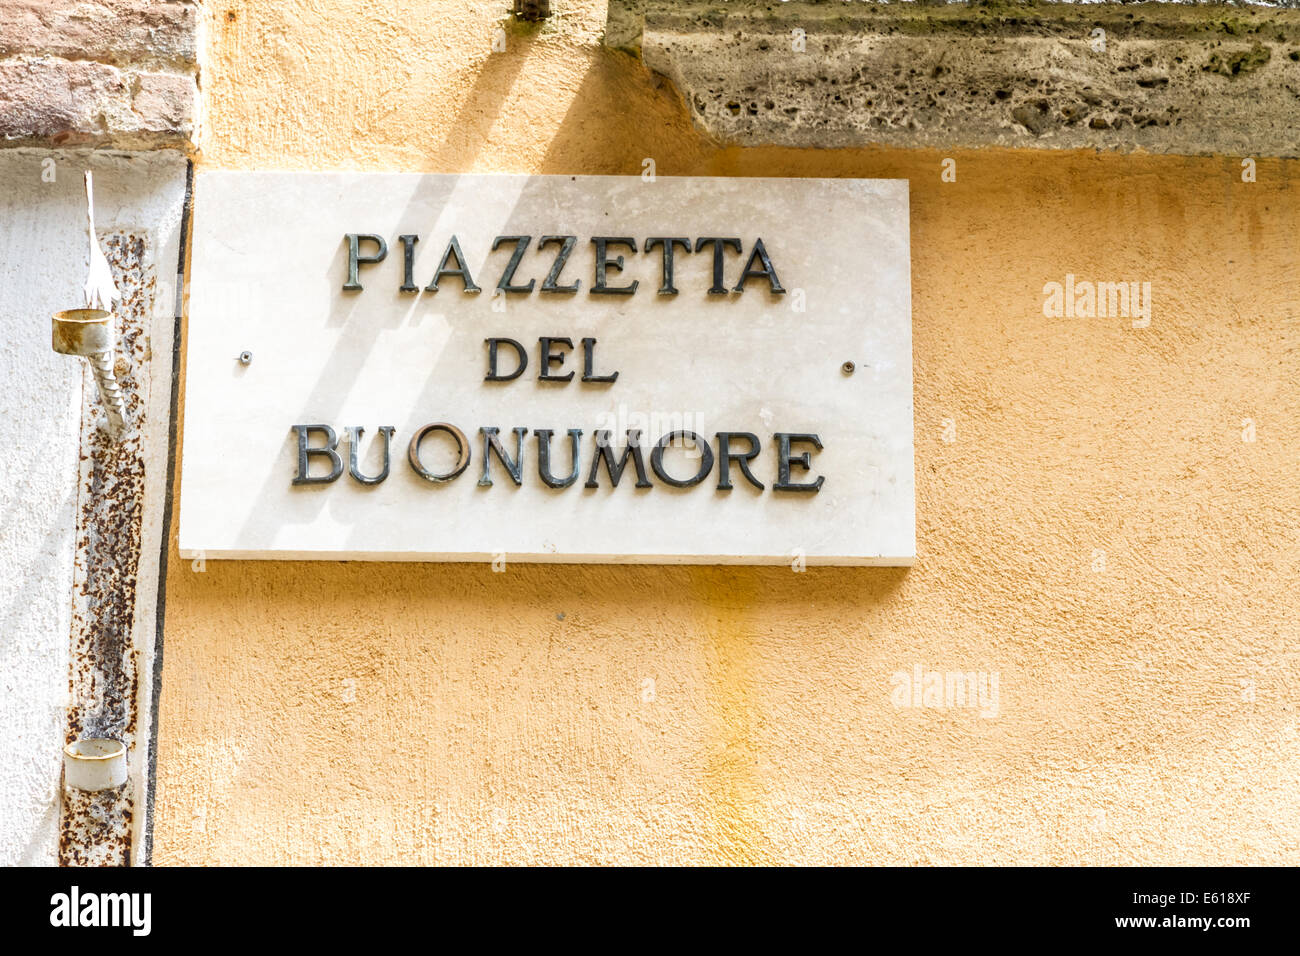 "Piazzetta del Buonumore" signifie "bonne humeur place" en italien. Panneau routier à Montepulciano, Toscane Banque D'Images